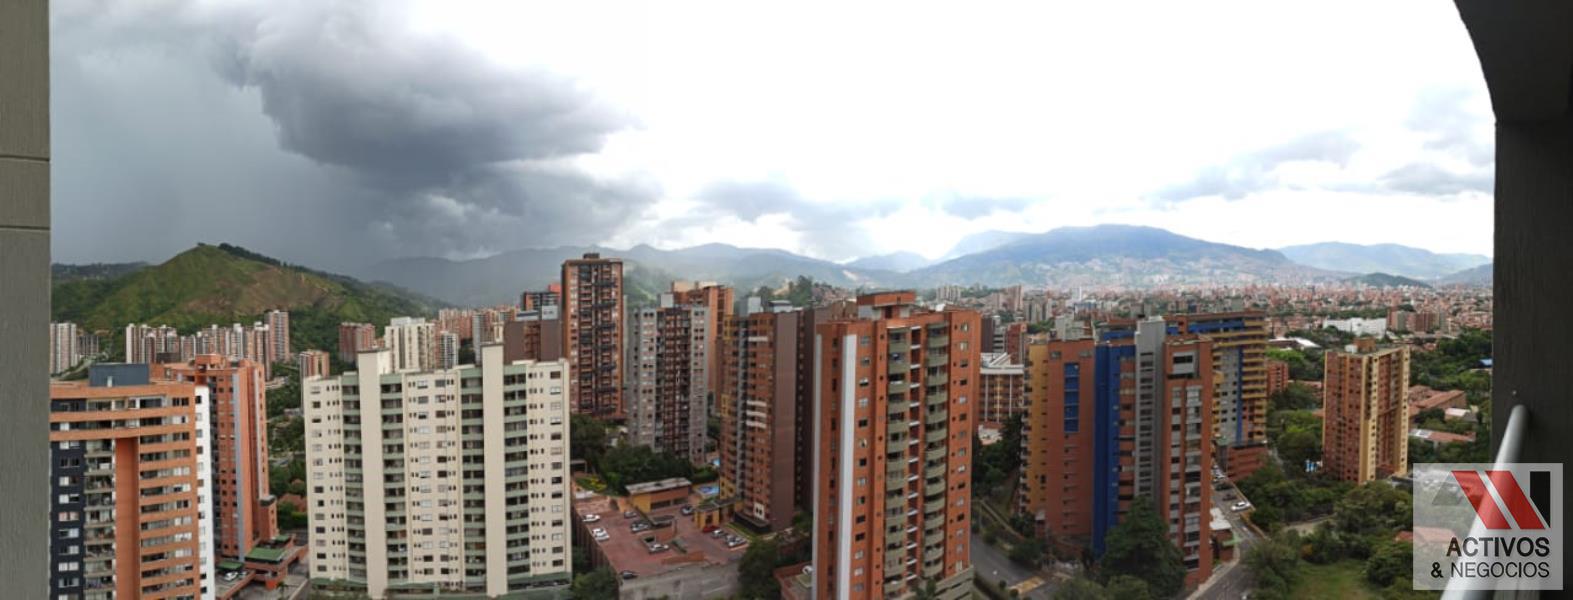 Apartamento disponible para Venta en Medellin con un valor de $420,000,000 código 1176